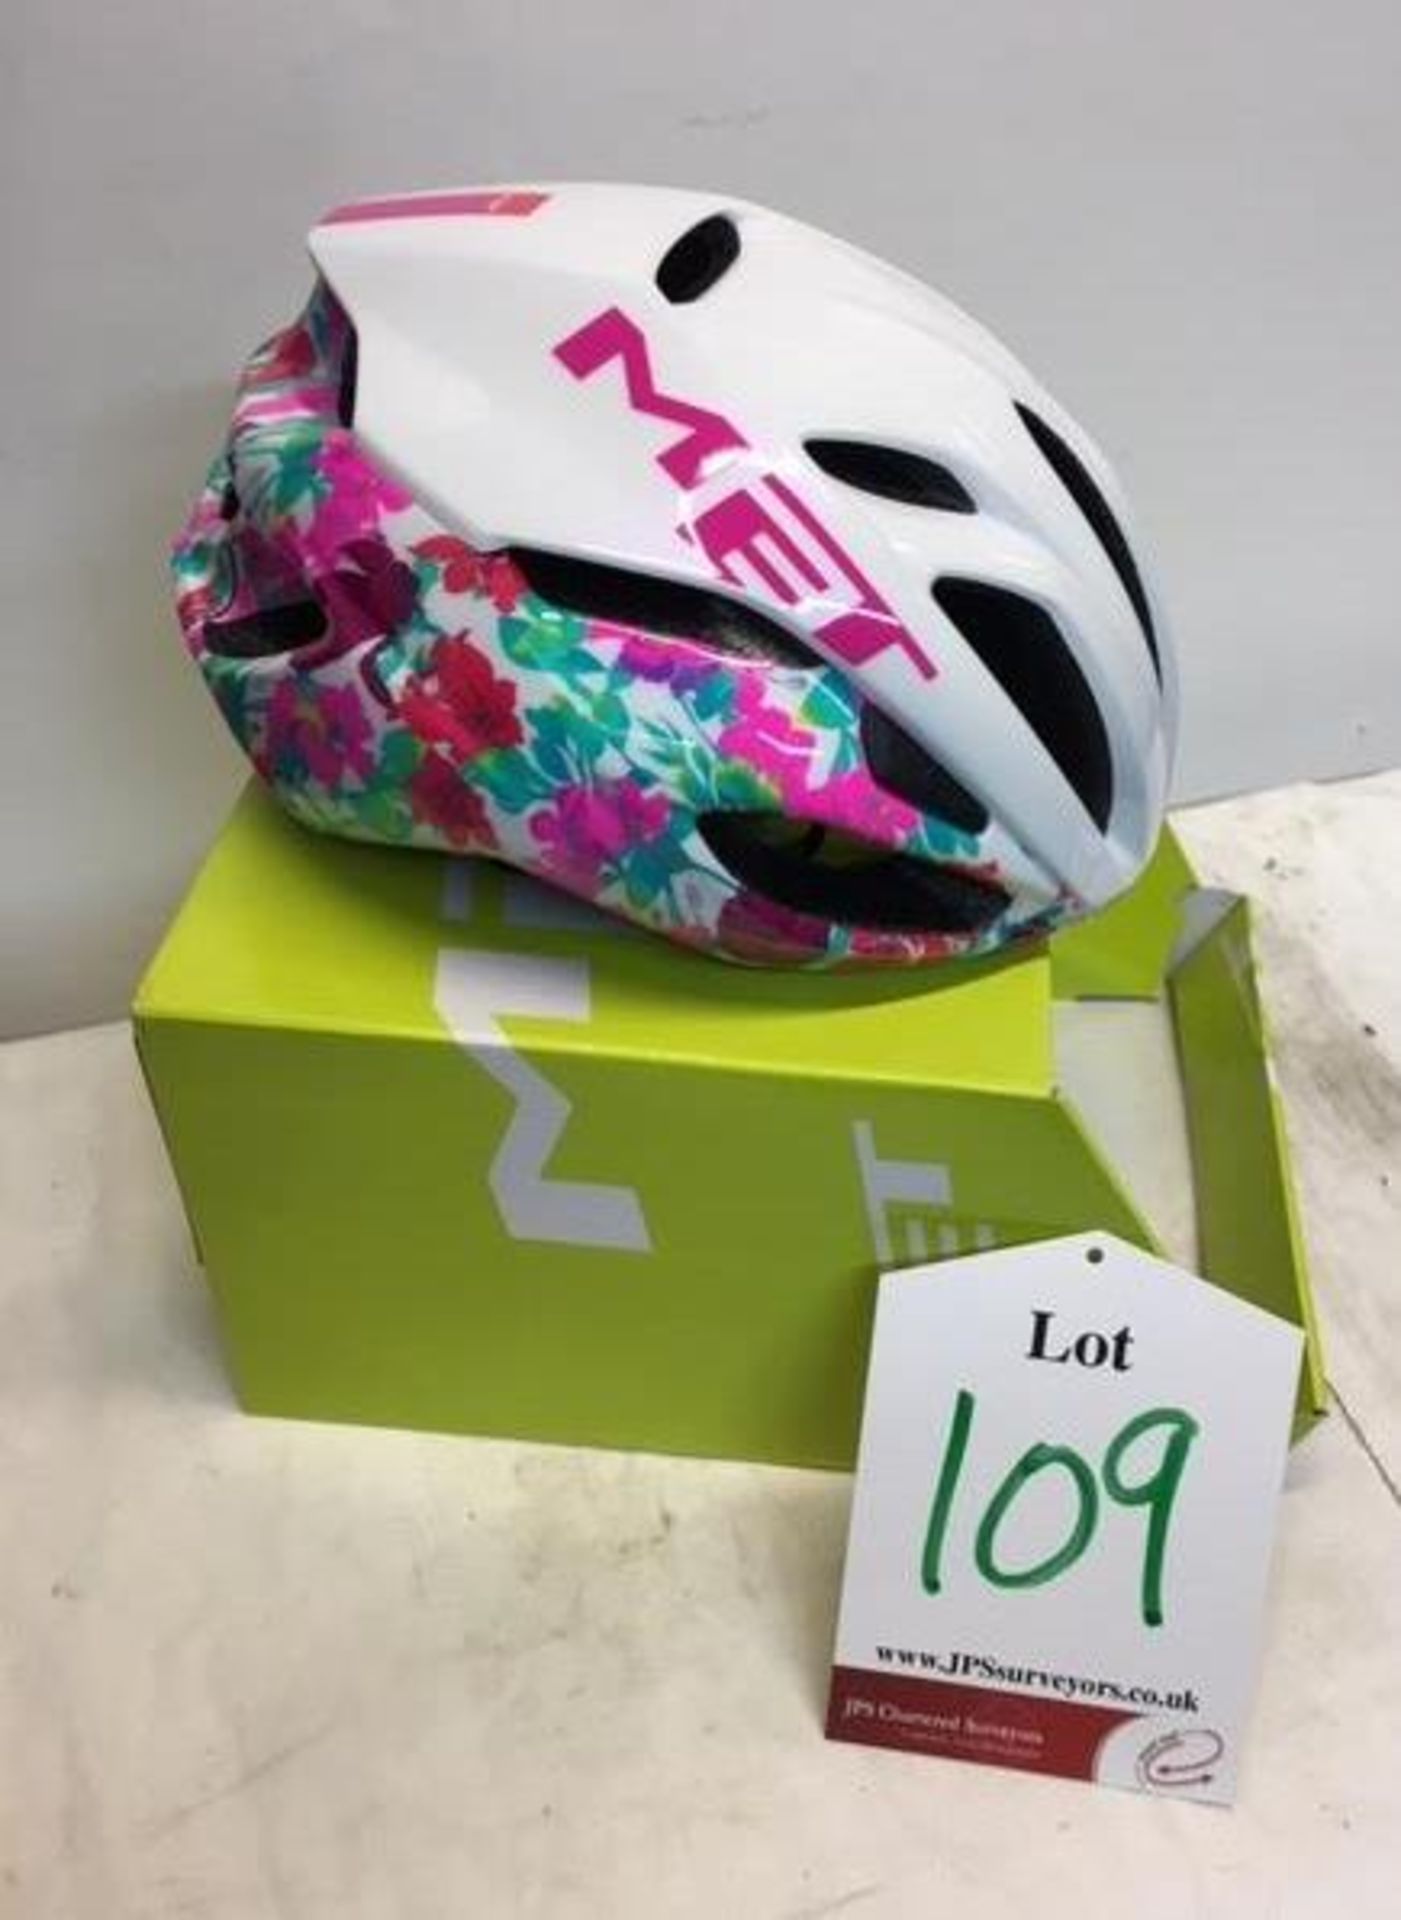 Met Rivale White/Pink Cycling Helmet | 2015 | RRP £80.00